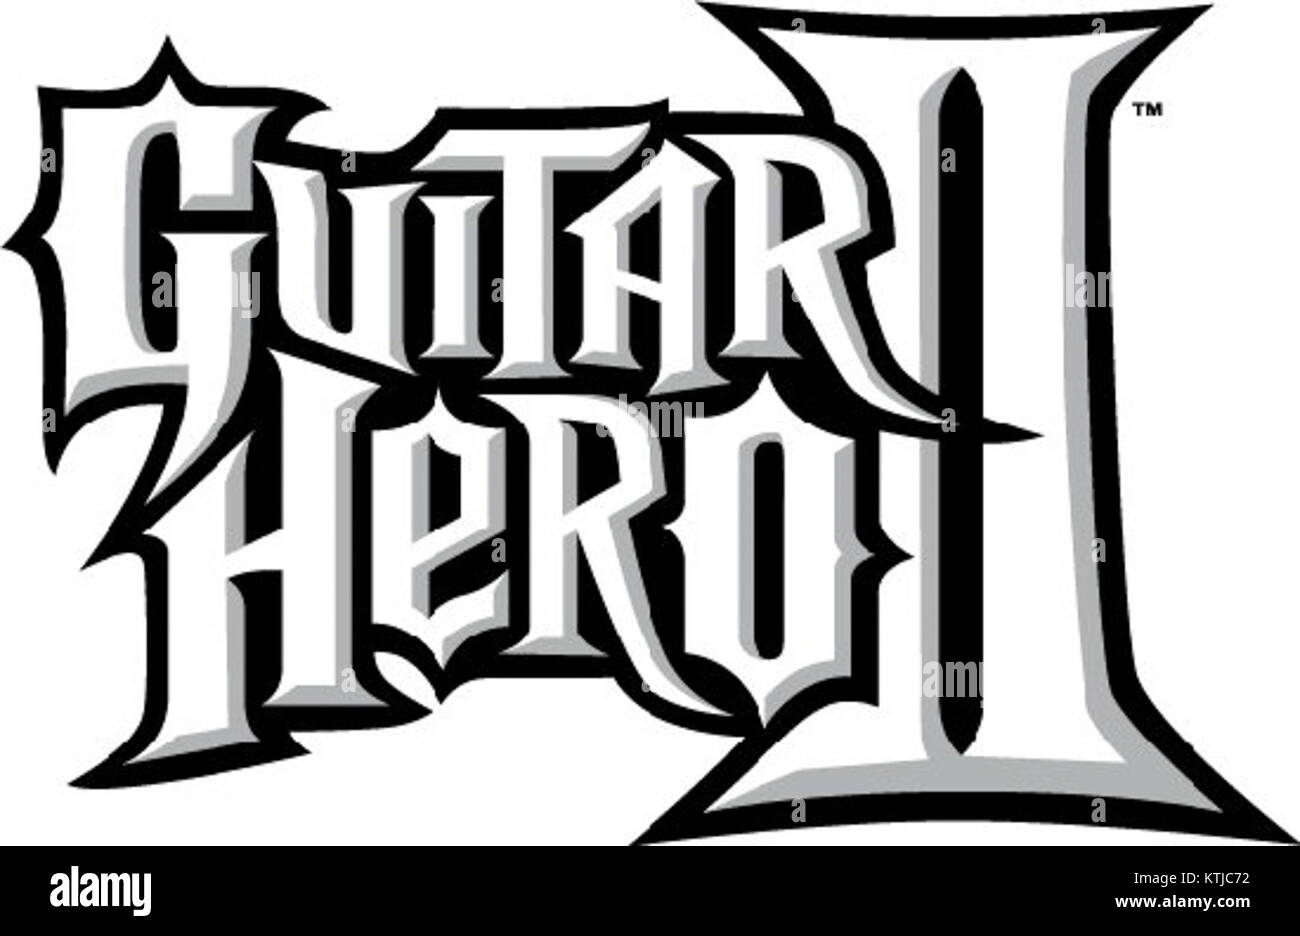 guitar hero 2